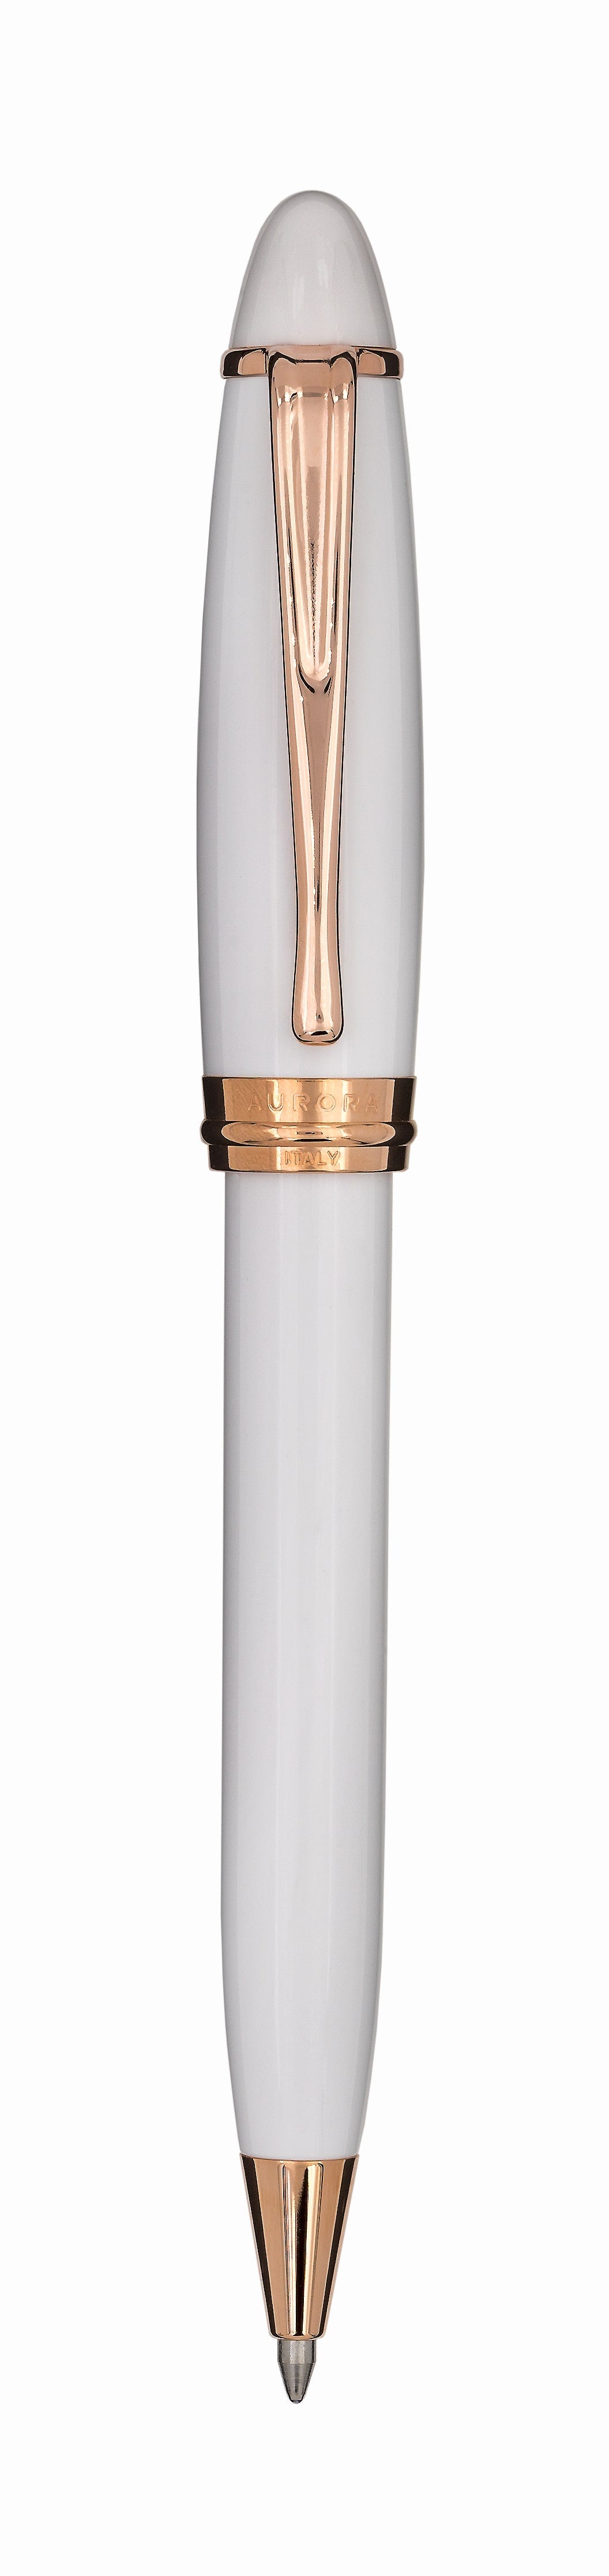 Aurora Ipsilon Resin White with Rose Gold Trims Ballpoint Pen